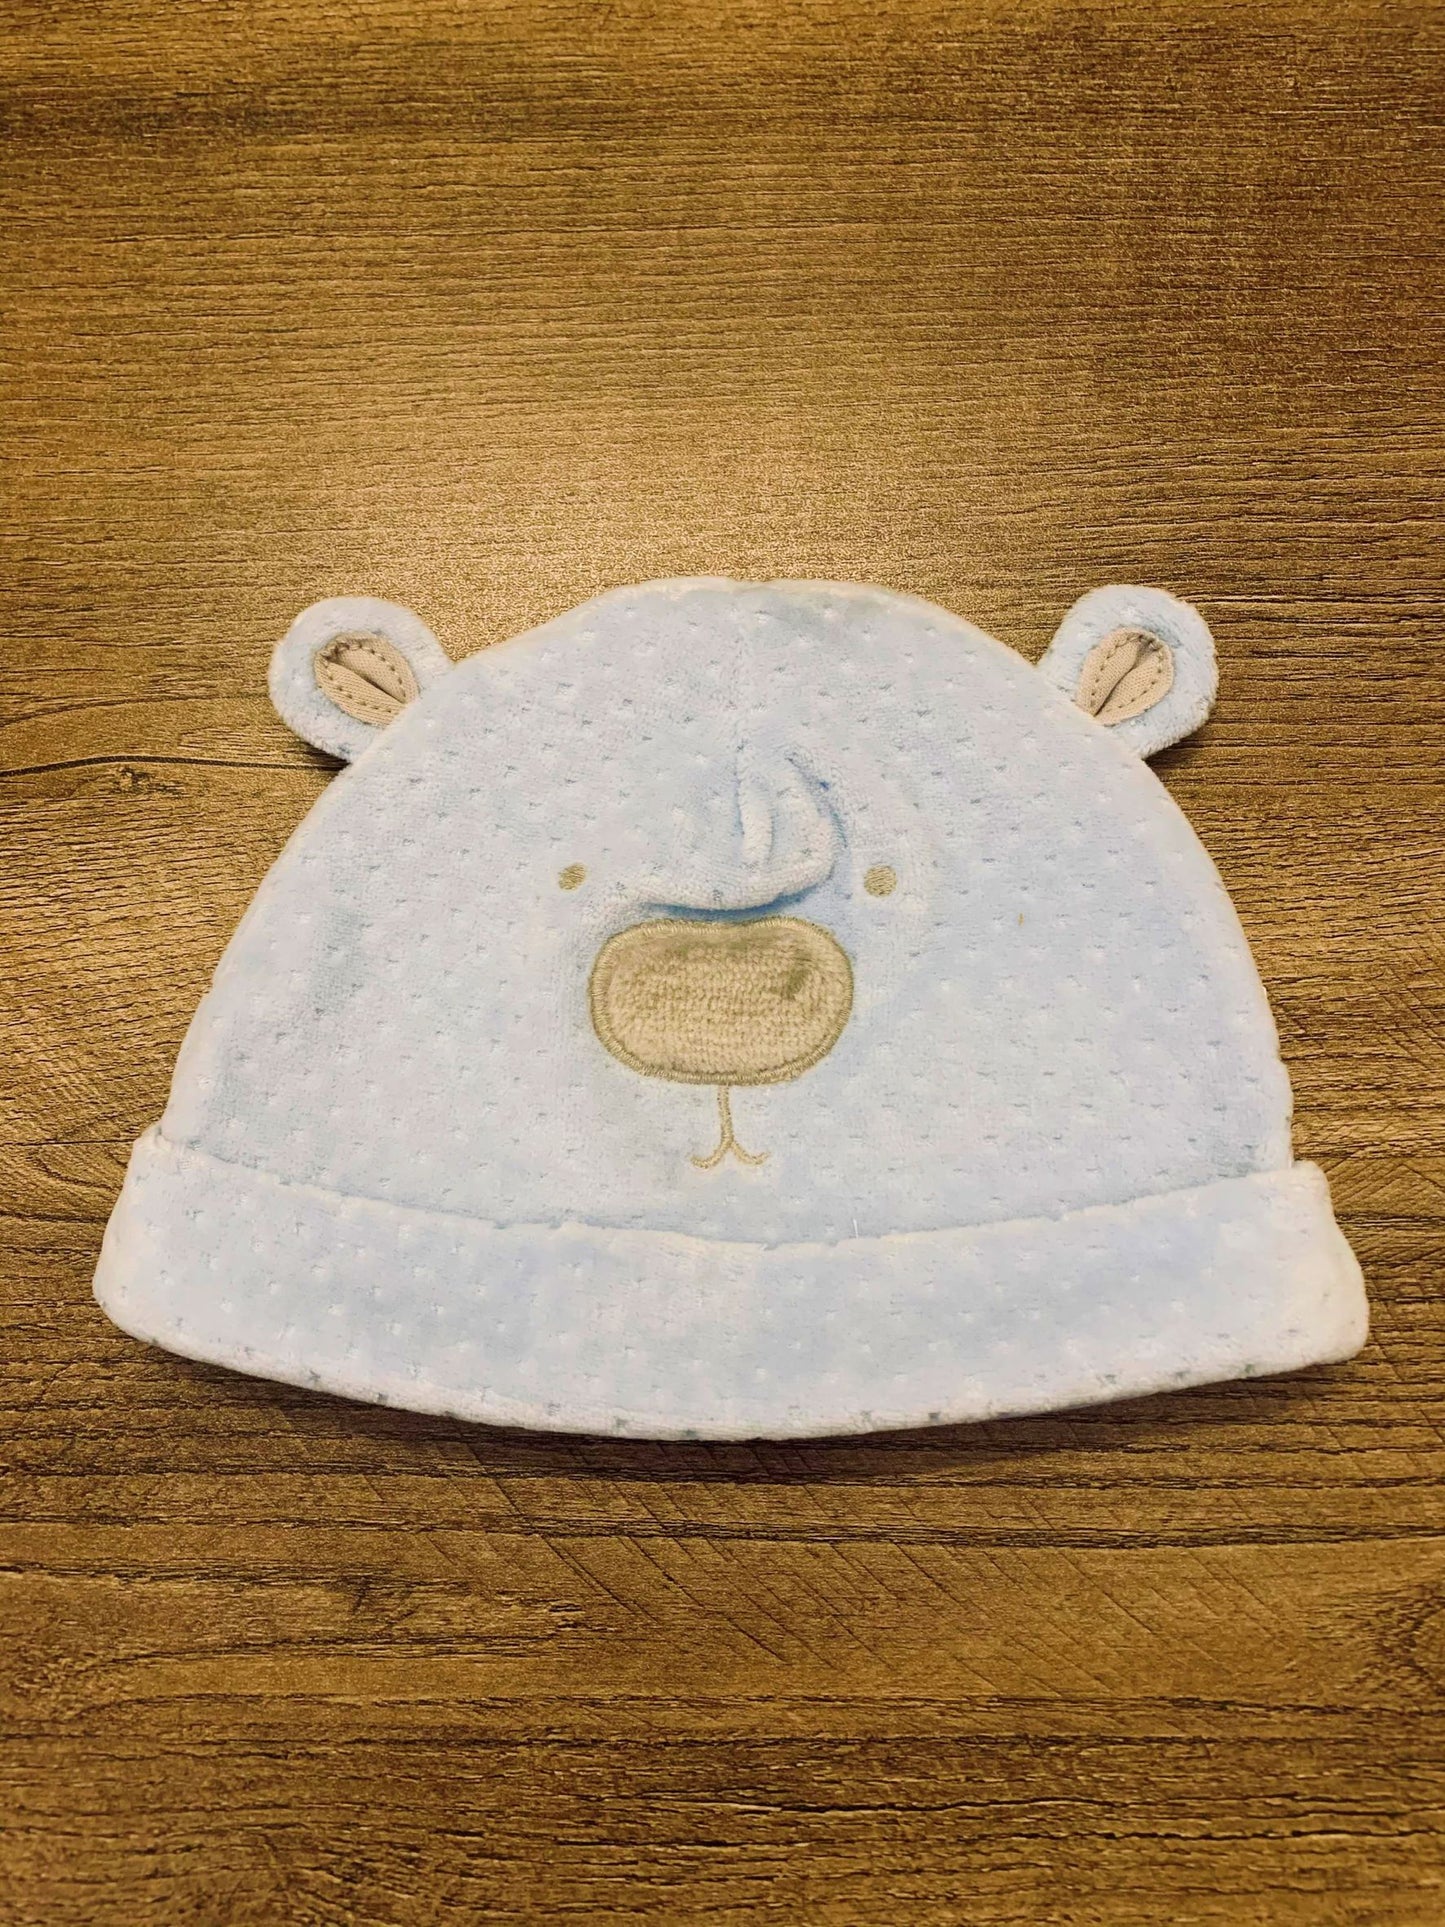 Bear Themed Cap